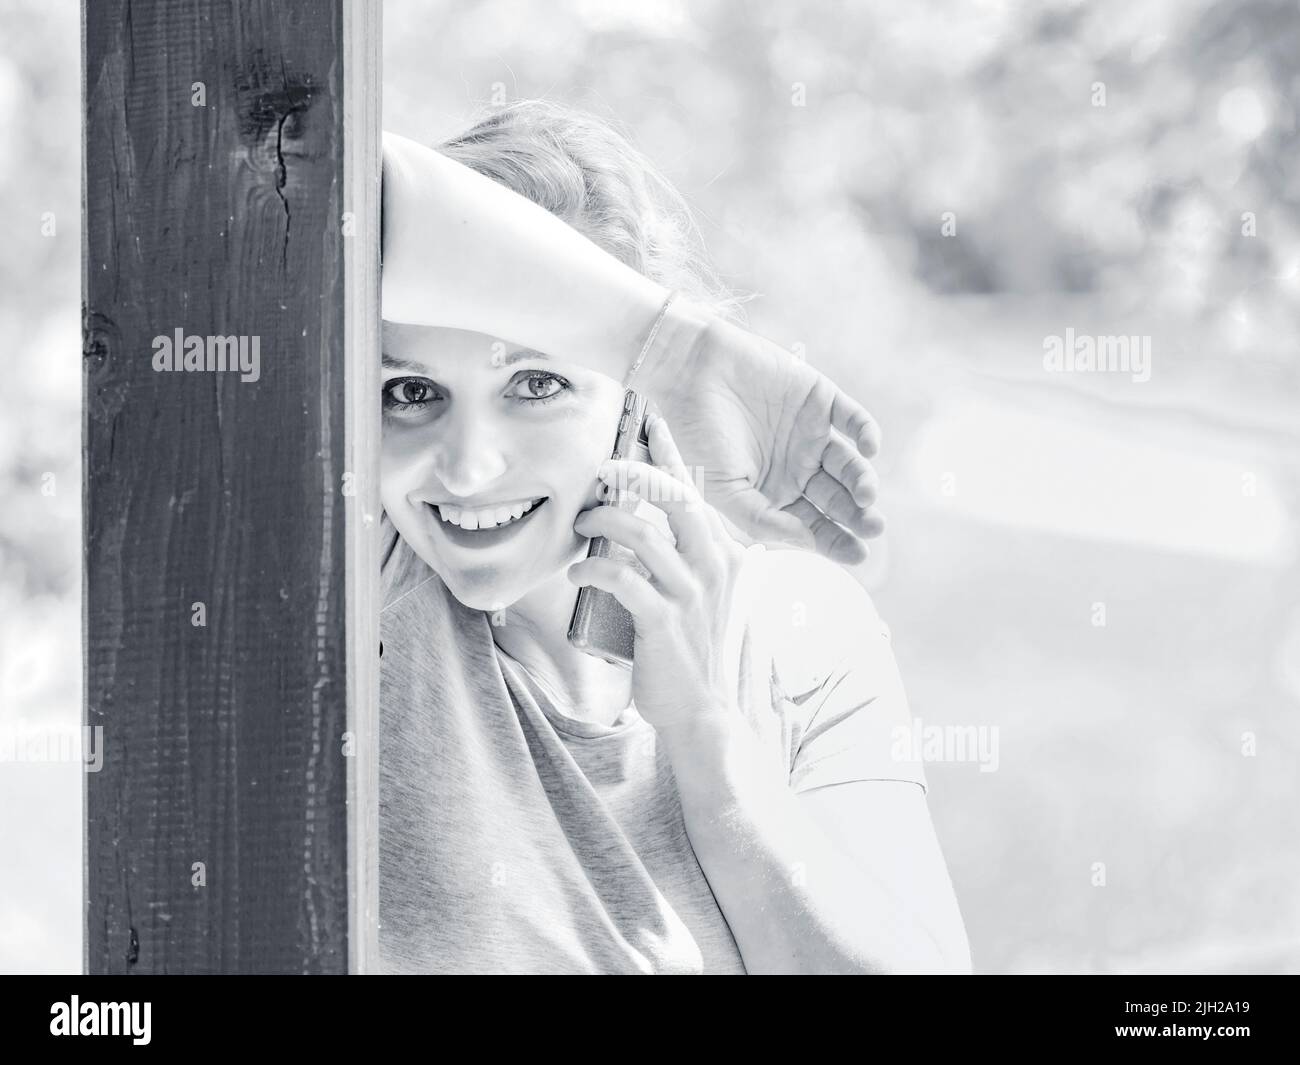 Occhi capelli biondi donna 30s sta parlando su smartphone inclinato su colonna di legno montante felice sorridente guardando la fotocamera high-hey highkey monocromatico Foto Stock